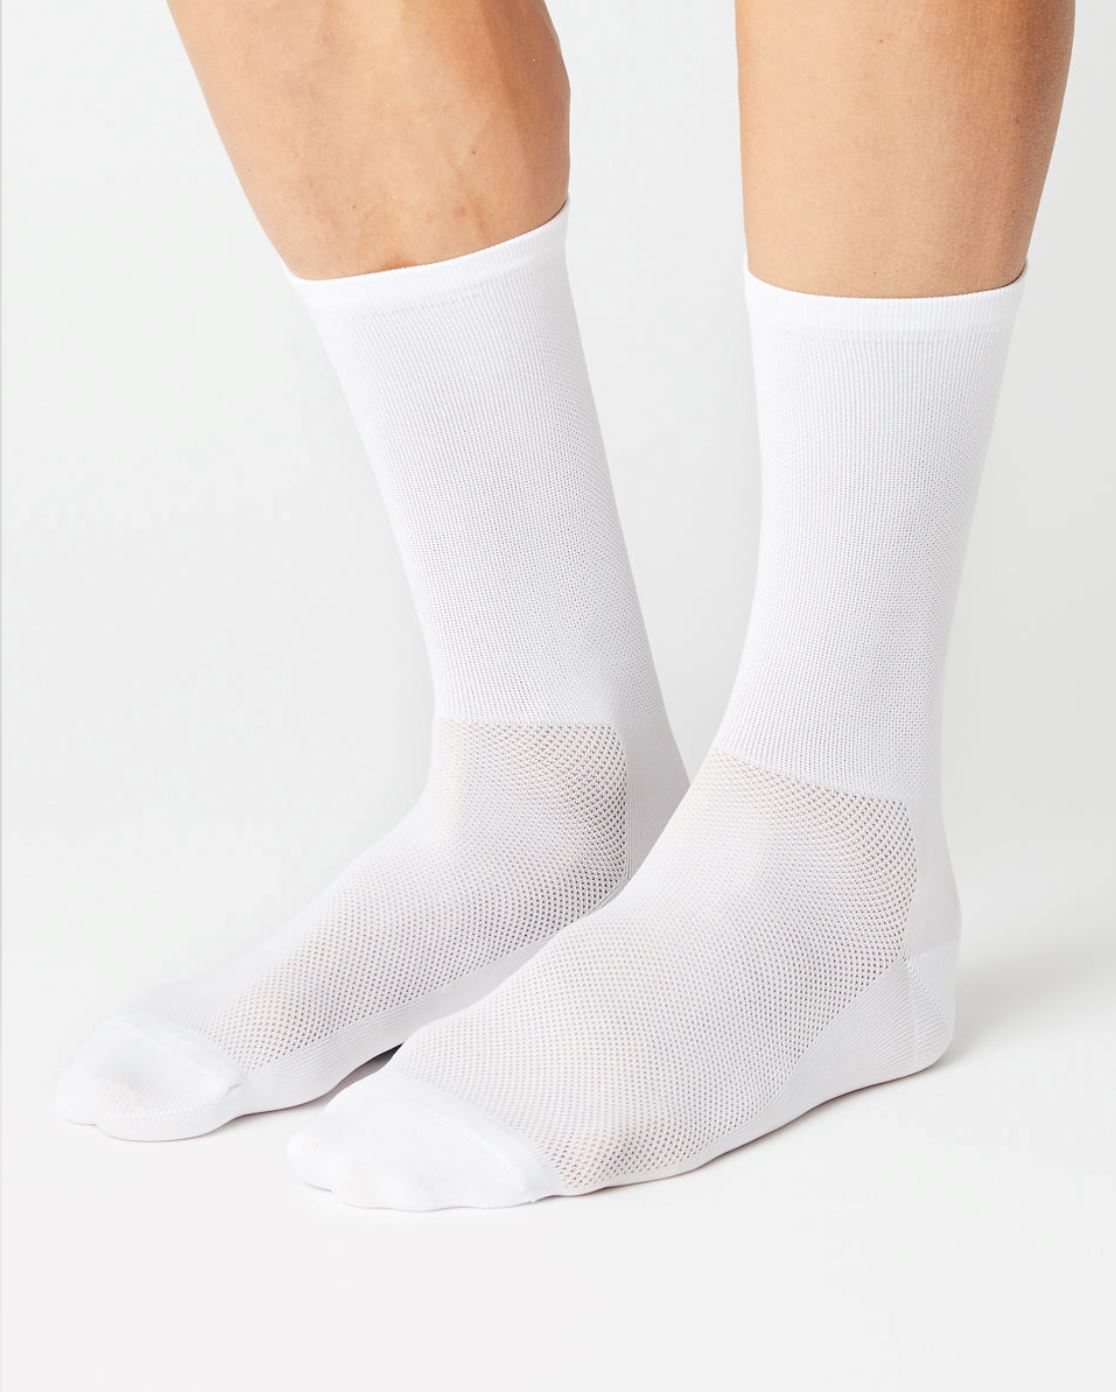 FINGERSCROSSED - Socks 002 Classic White Socks Fingerscrossed S 